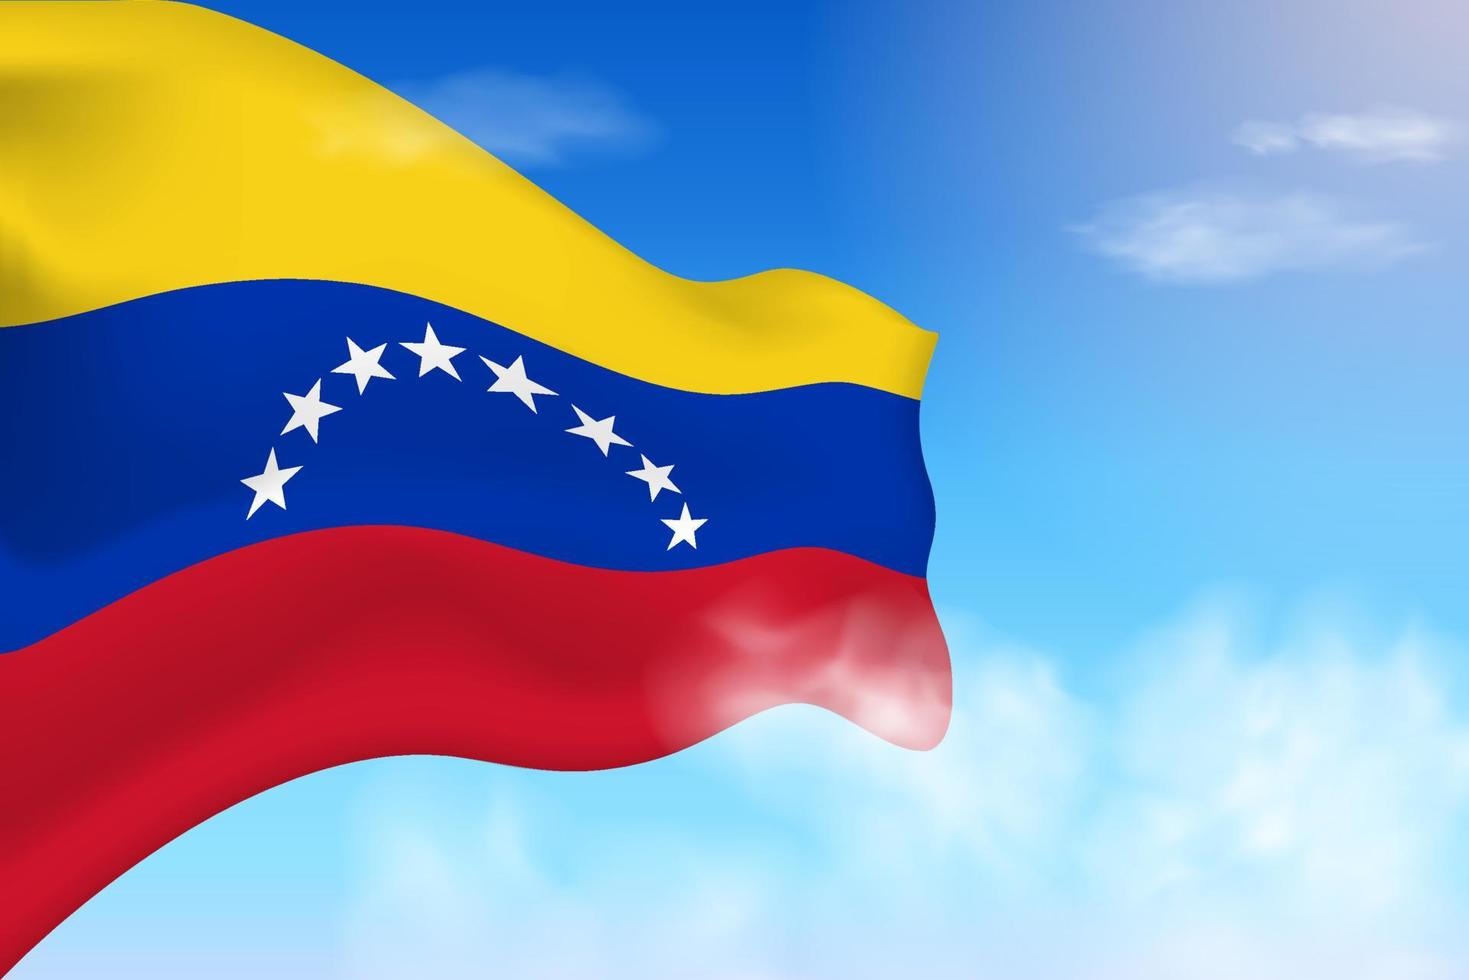 bandiera venezuela tra le nuvole. bandiera vettoriale che sventola nel cielo. illustrazione realistica della bandiera della giornata nazionale. vettore di cielo blu.